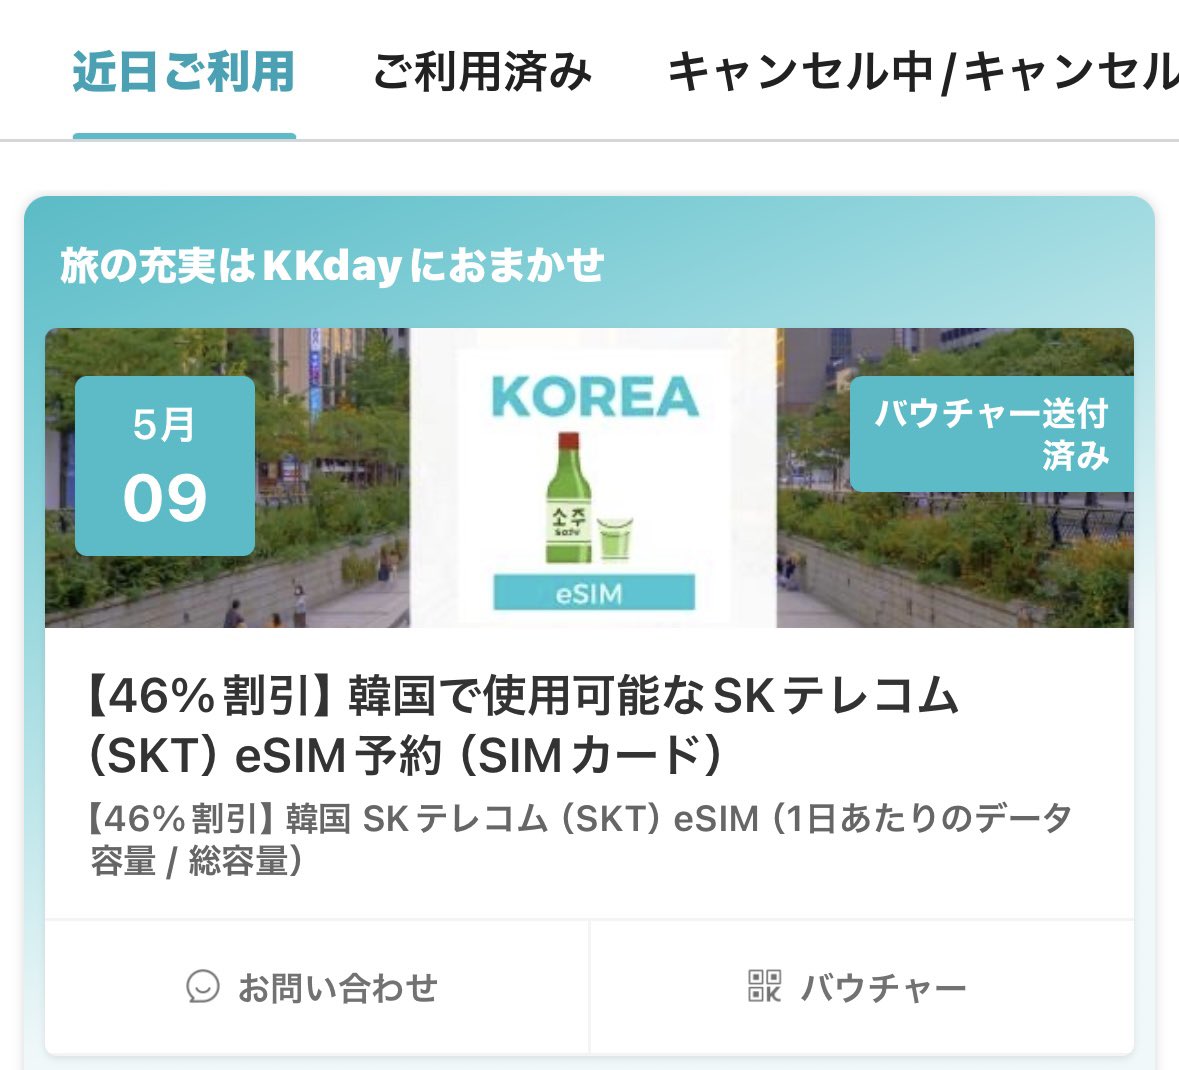 @KKdayJP 海外行く時はいつもKKdayでWi-FiかeSIMを購入しています😆✨
明日からの旅行もしっかりとKKdayのeSIM✈️🛜
これからもずっとお世話になります❕
釜山によく行くのでツアーや各種チケットがもっと増えたら嬉しいなぁ🤭と思っています🍀
1万RP達成で韓国人旦那とカナダ🇨🇦に行きたいなぁ🥹❤️